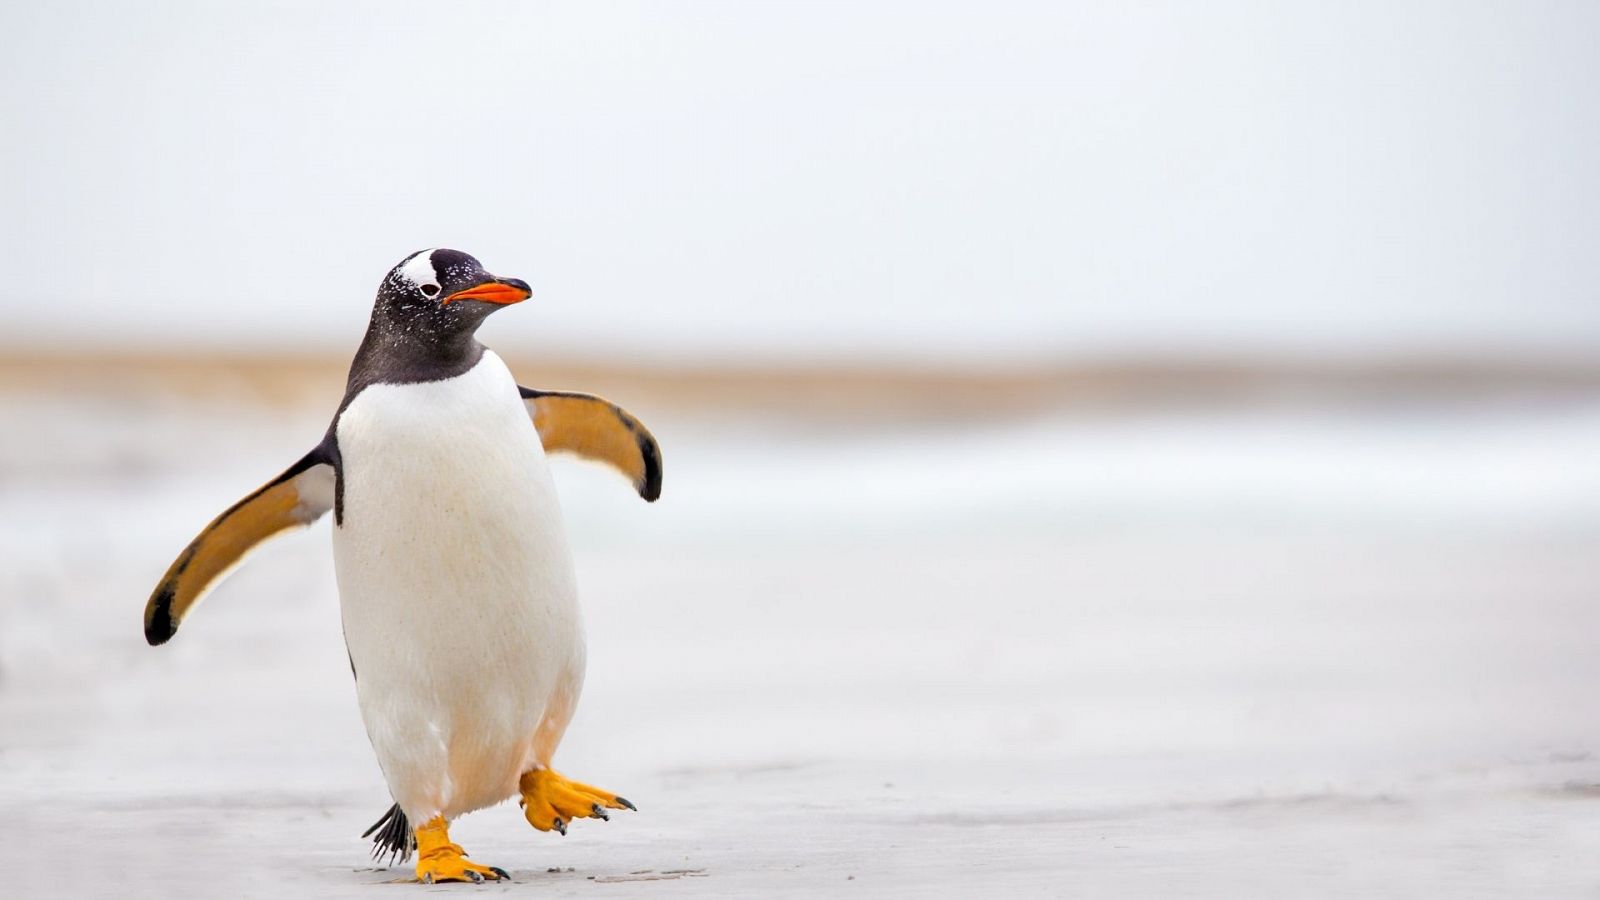 Reserva natural - Entre pingüinos y defensores del medio ambiente - Escuchar ahora